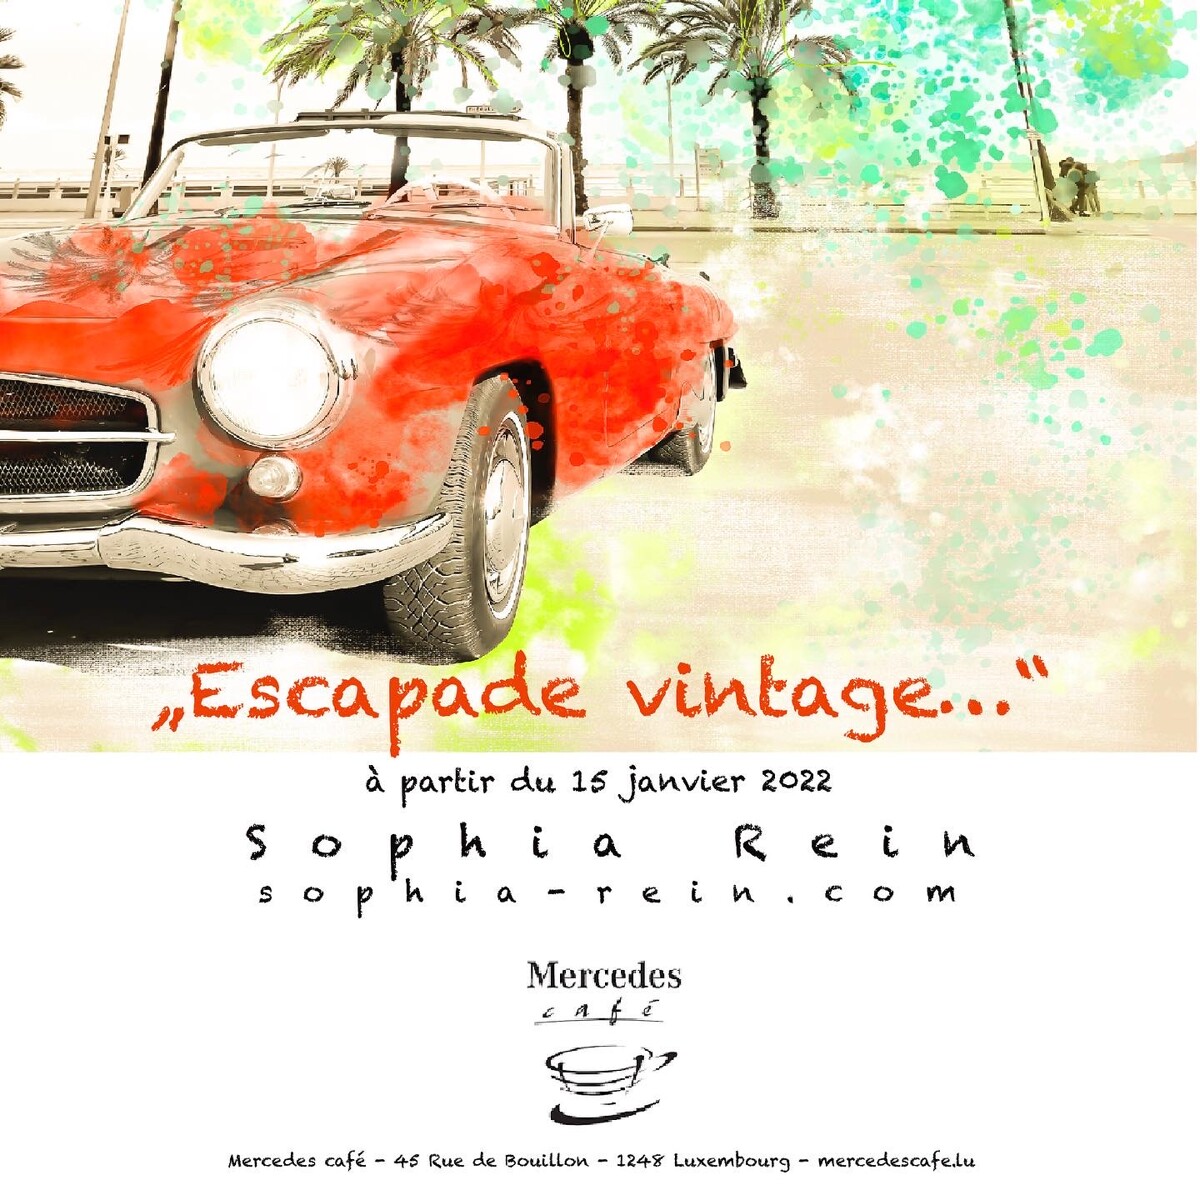 Ausstellung “Escapade vintage…”